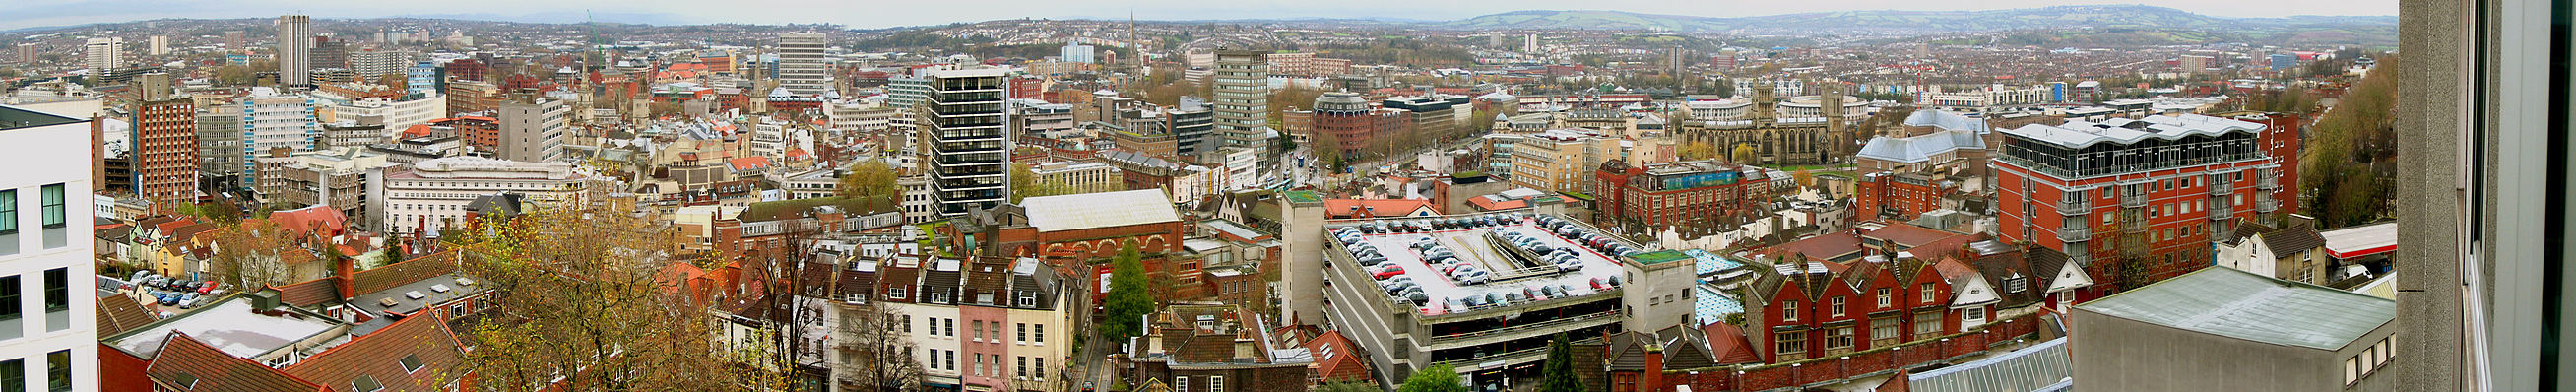 Bristol, en.wikipedia.org